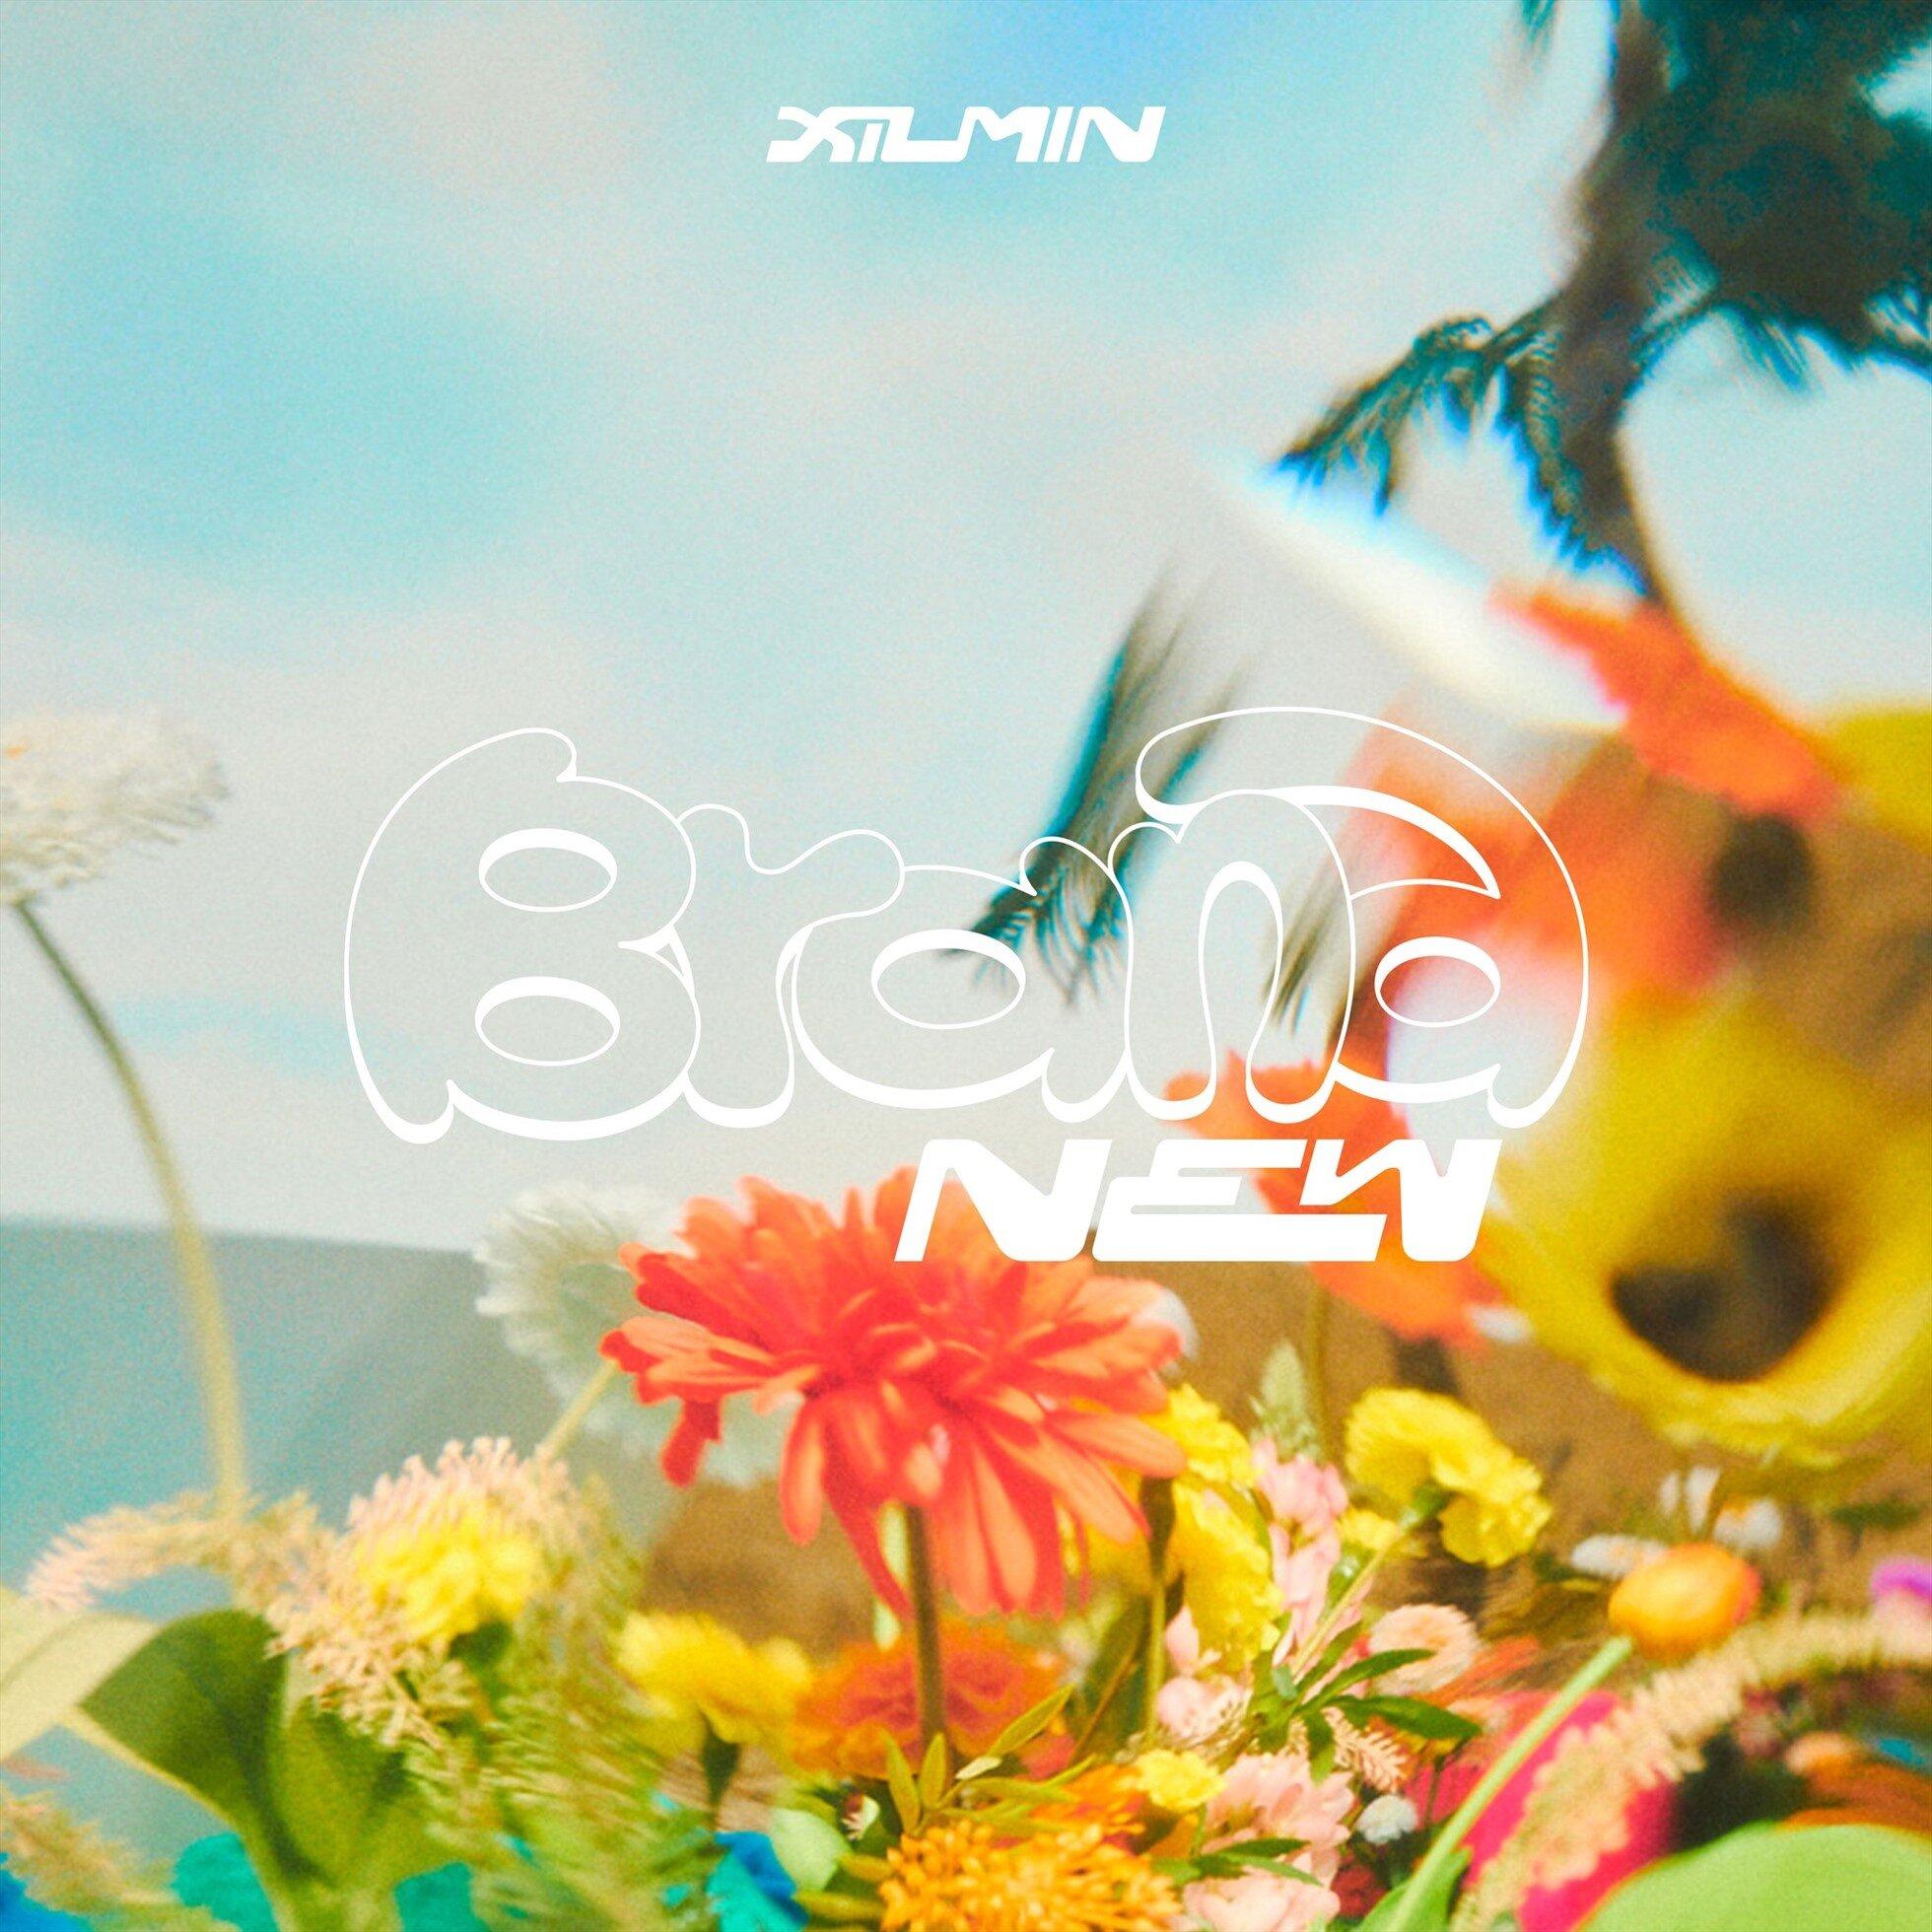 Album solo đầu tay mang tên "Brand New" của Xiumin sẽ được phát hành vào cuối tháng 9 này (Ảnh: Internet)